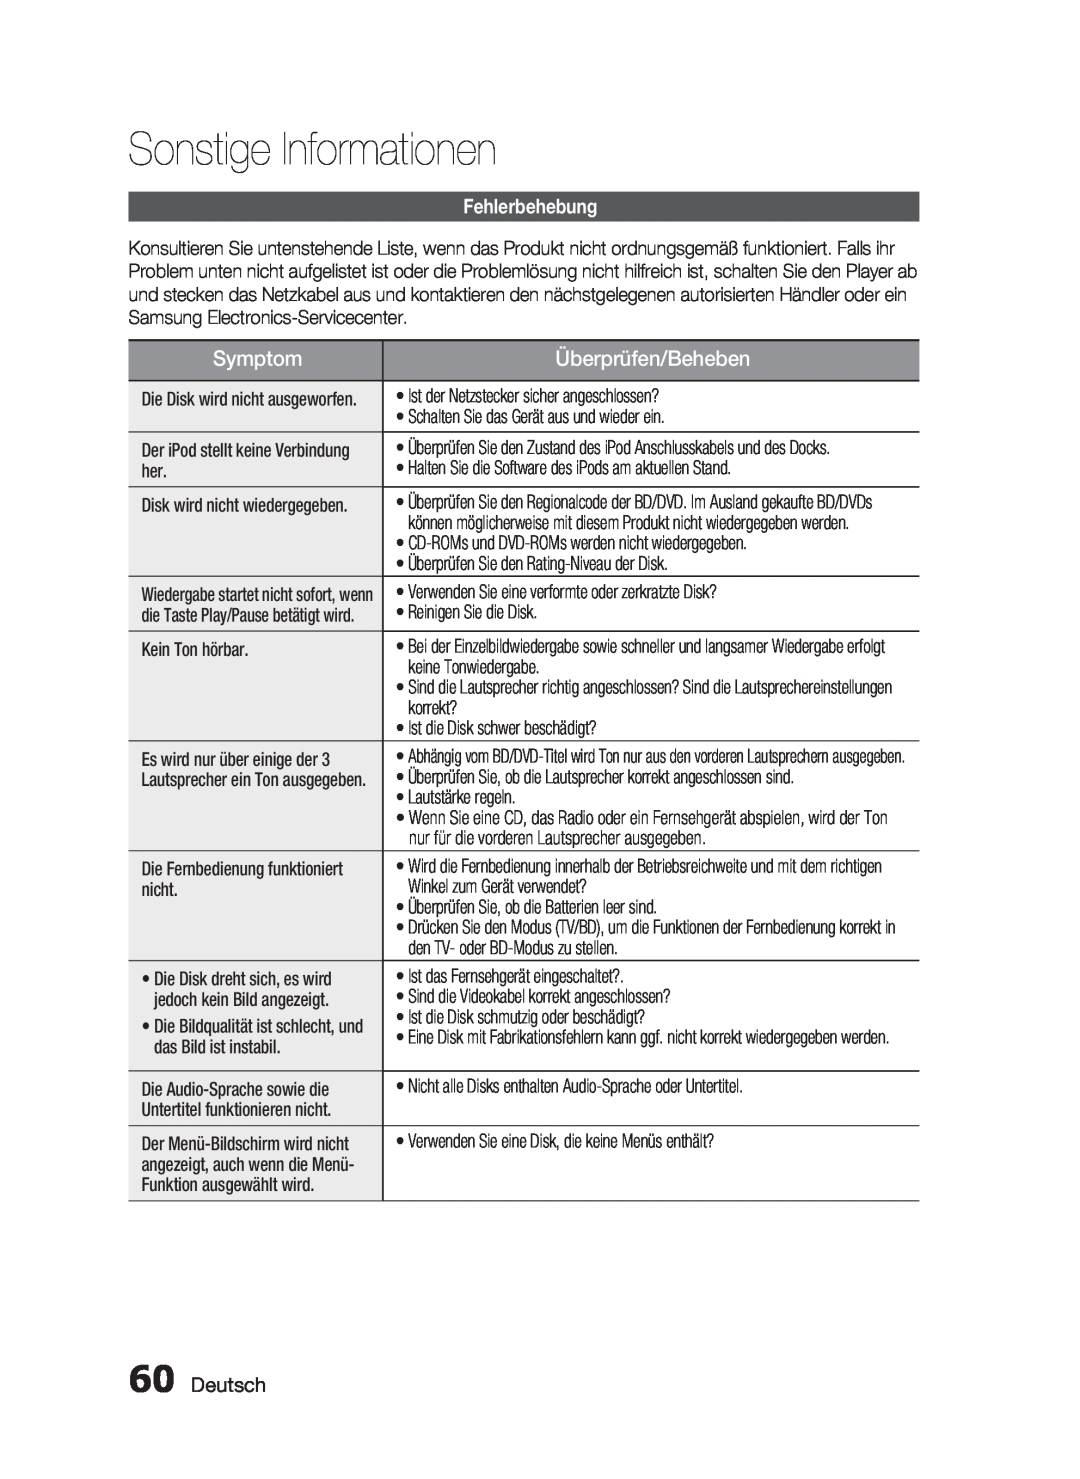 Samsung HT-C6200/XEN, HT-C6200/EDC manual Sonstige Informationen, Symptom, Überprüfen/Beheben, Fehlerbehebung, Deutsch 